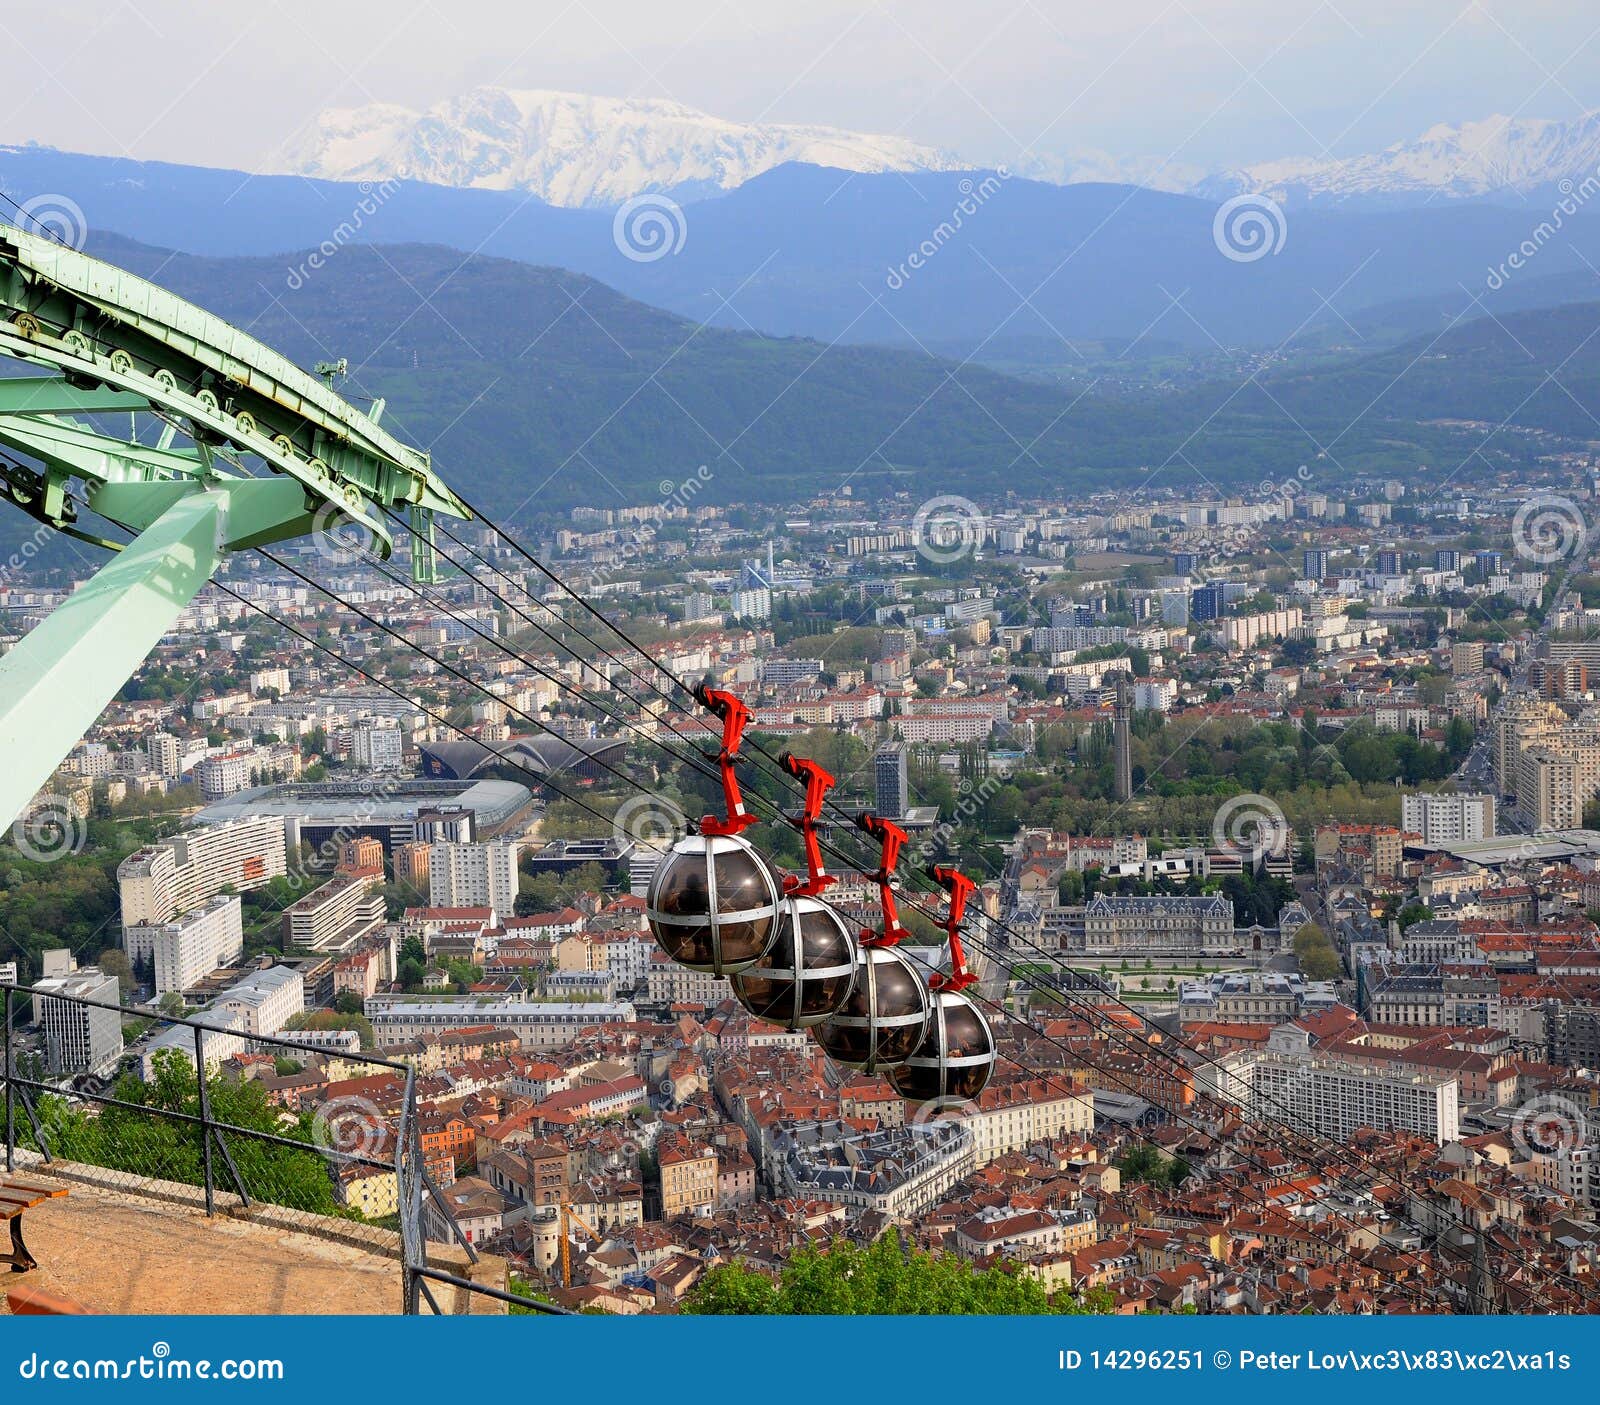 funicular elvețian mai abrupt împotriva îmbătrânirii)